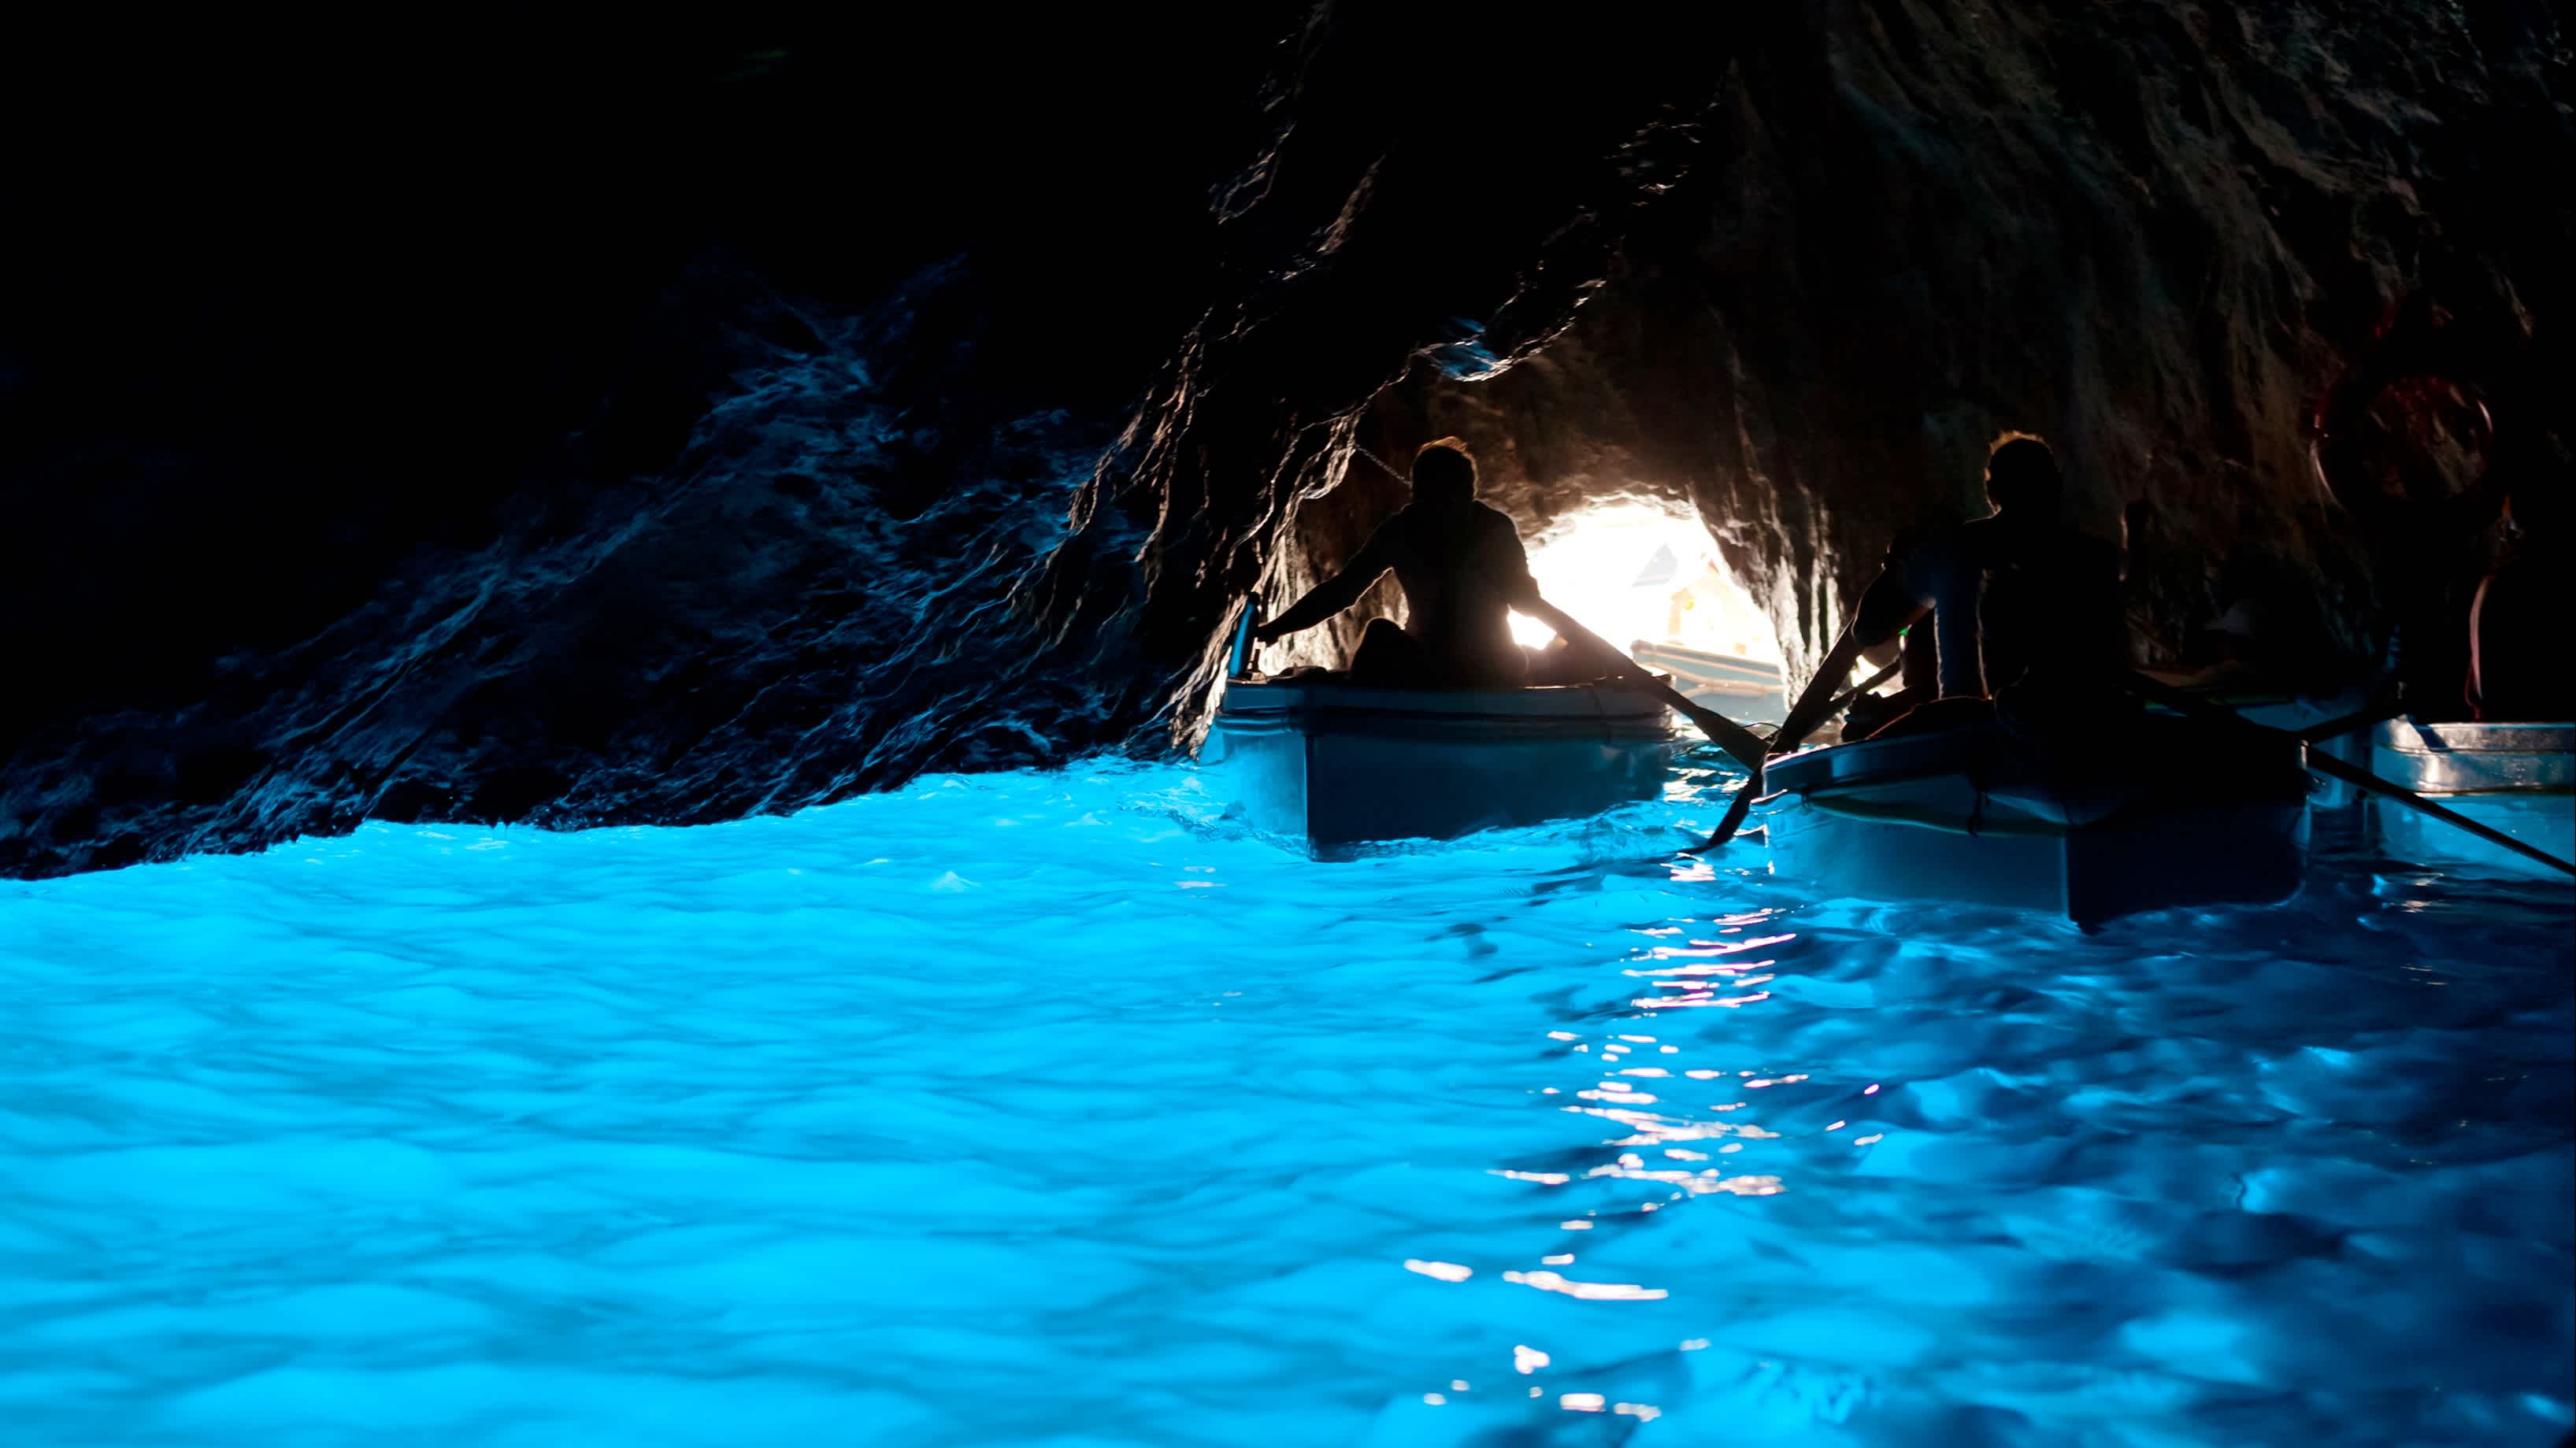 Die Blaue Grotte, italienisch "Grotta Azzurra", ist eine Meeresgrotte an der Küste der Insel Capri in Süditalien.